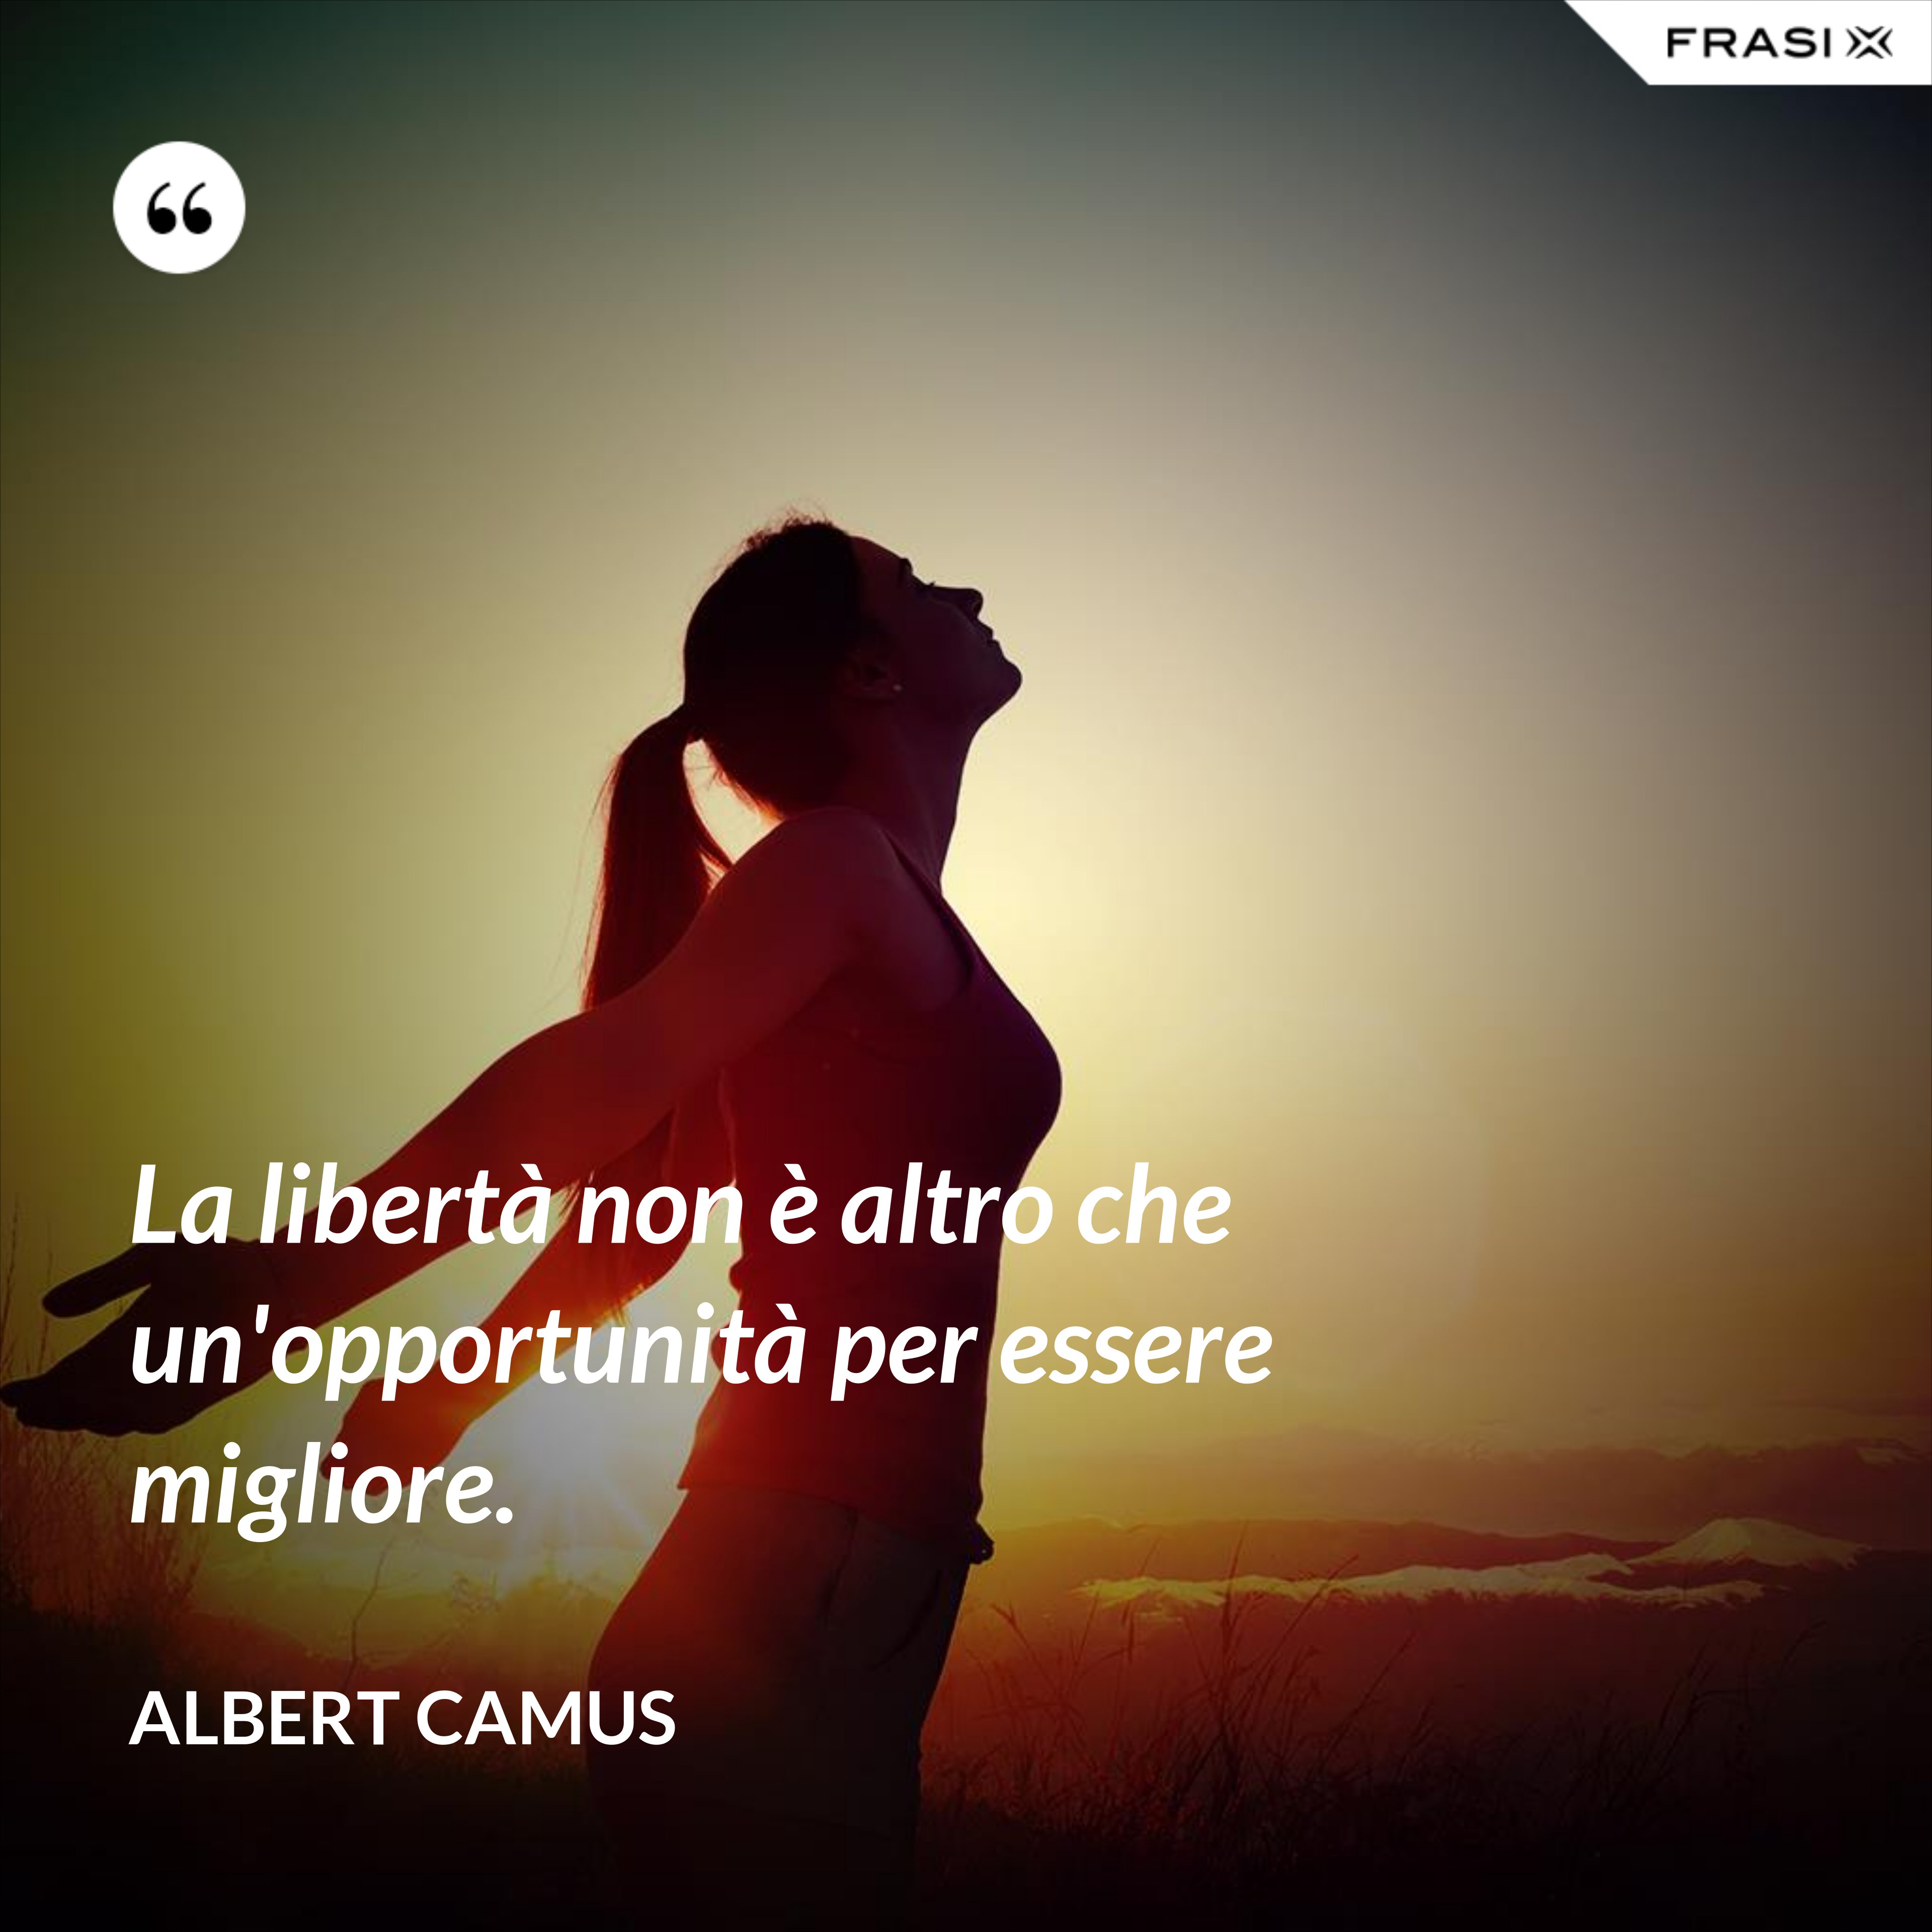 La libertà non è altro che un'opportunità per essere migliore. - Albert Camus